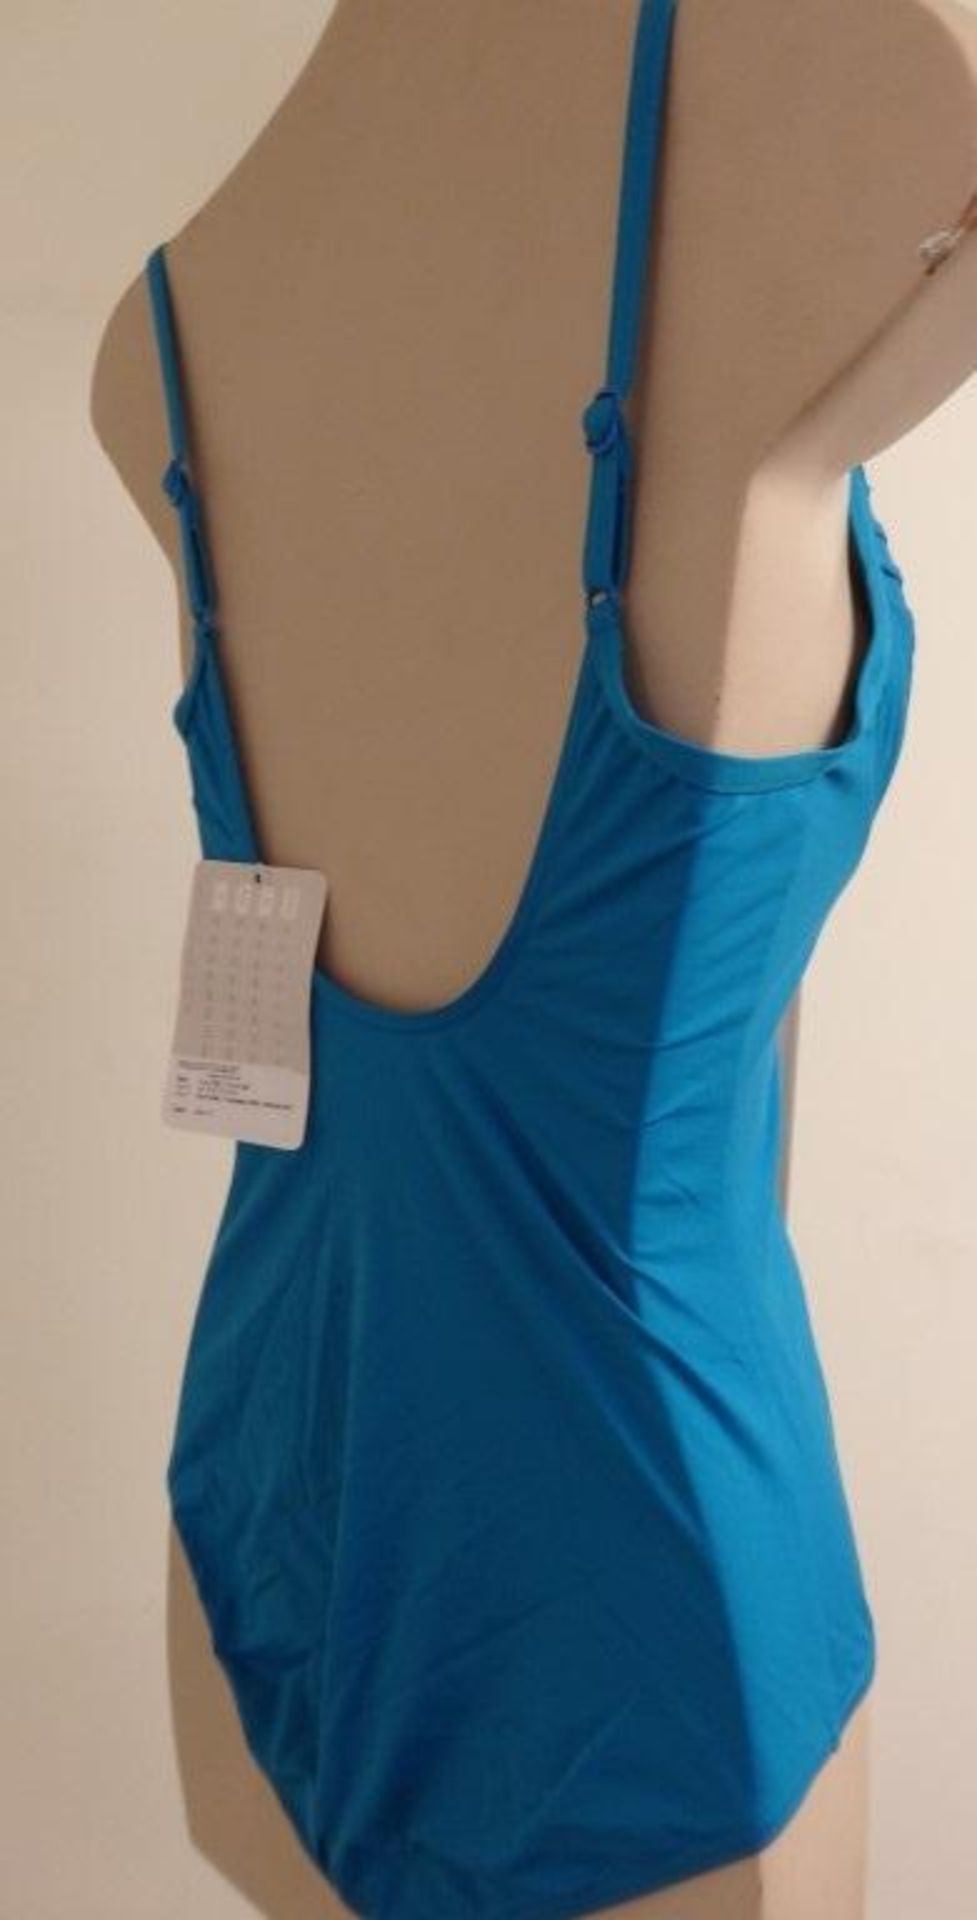 1 x Rasurel - Turquoise -Touquet balconnet Swimsuit - R20232 - Size 2C - UK 32 - Fr 85 - EU/Int 70 - Image 5 of 9